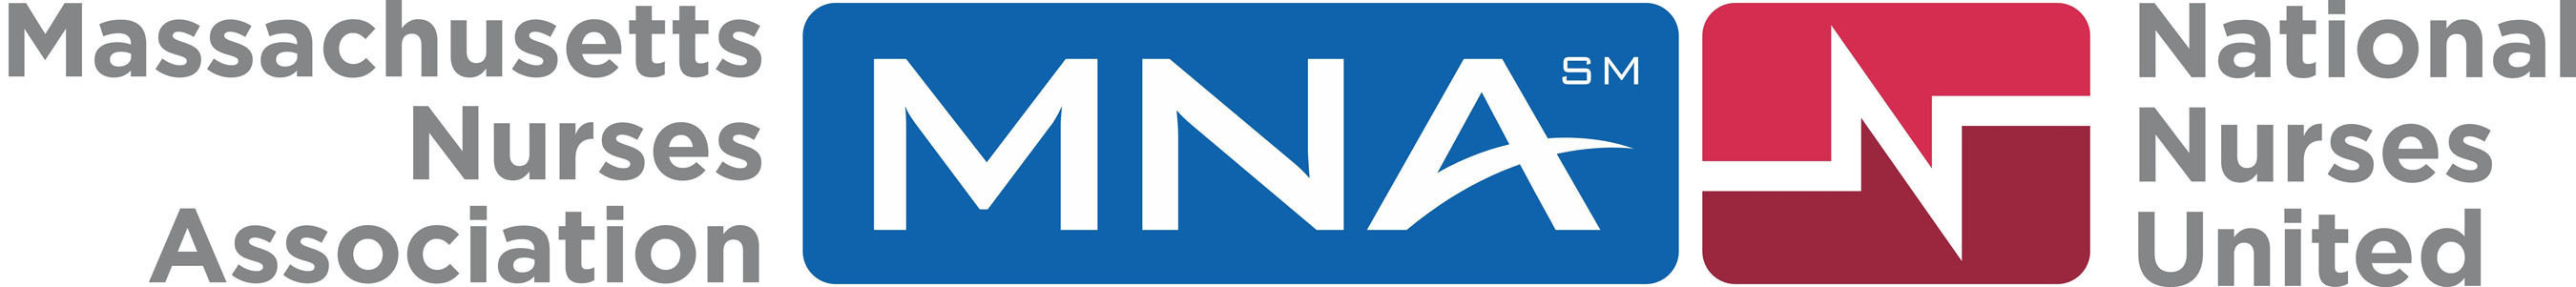 Massachusetts Nurses Association/National Nurses United